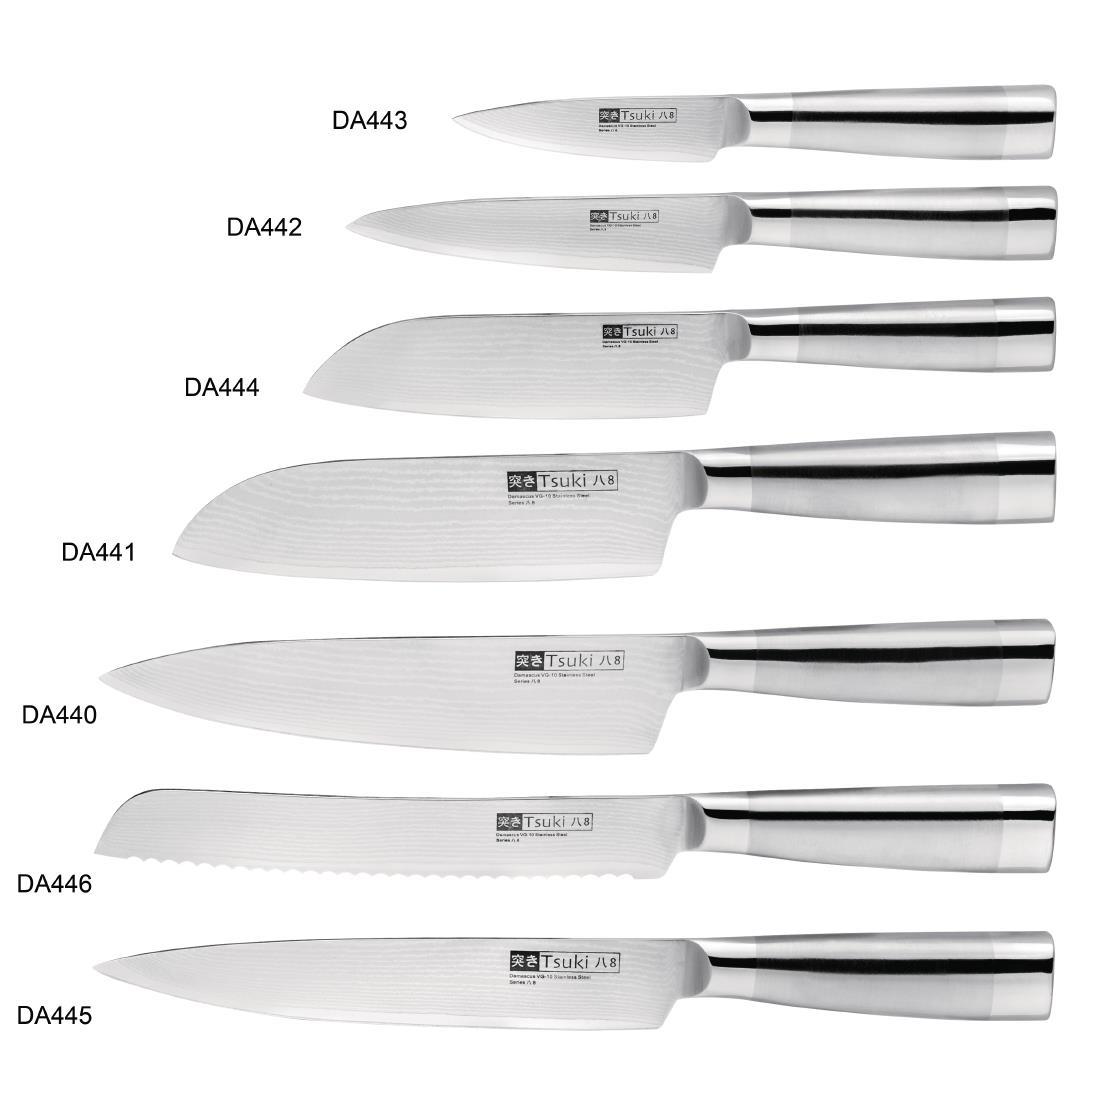 Vogue Tsuki Series 8 Santoku Knife 14cm - DA444  - 5